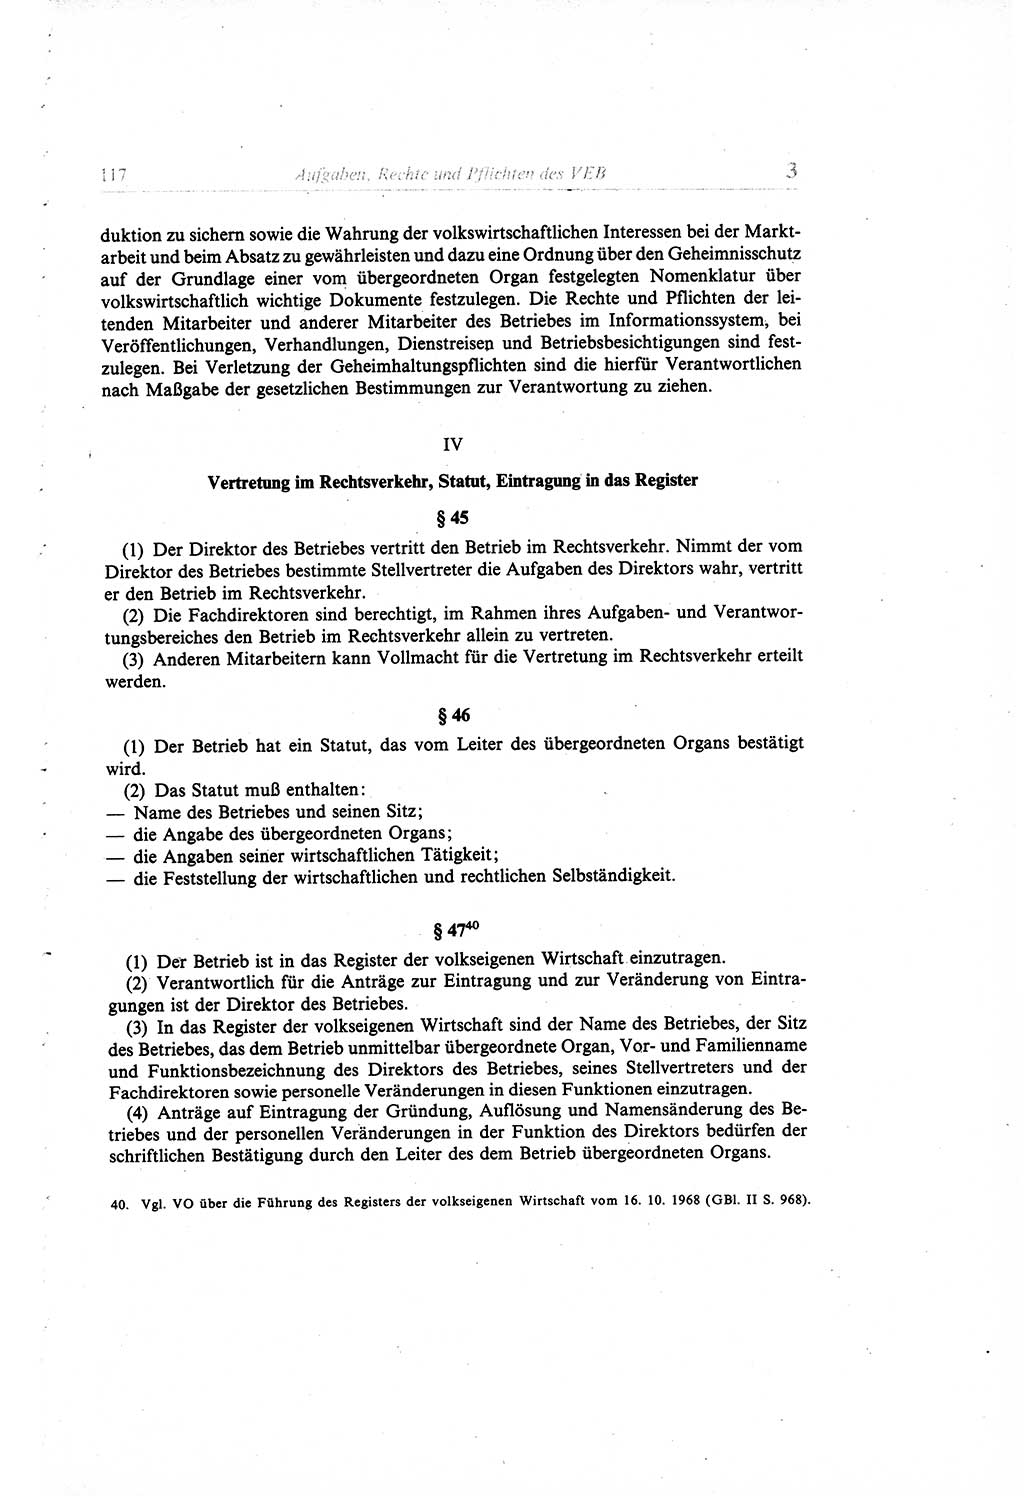 Gesetzbuch der Arbeit (GBA) und andere ausgewählte rechtliche Bestimmungen [Deutsche Demokratische Republik (DDR)] 1968, Seite 117 (GBA DDR 1968, S. 117)